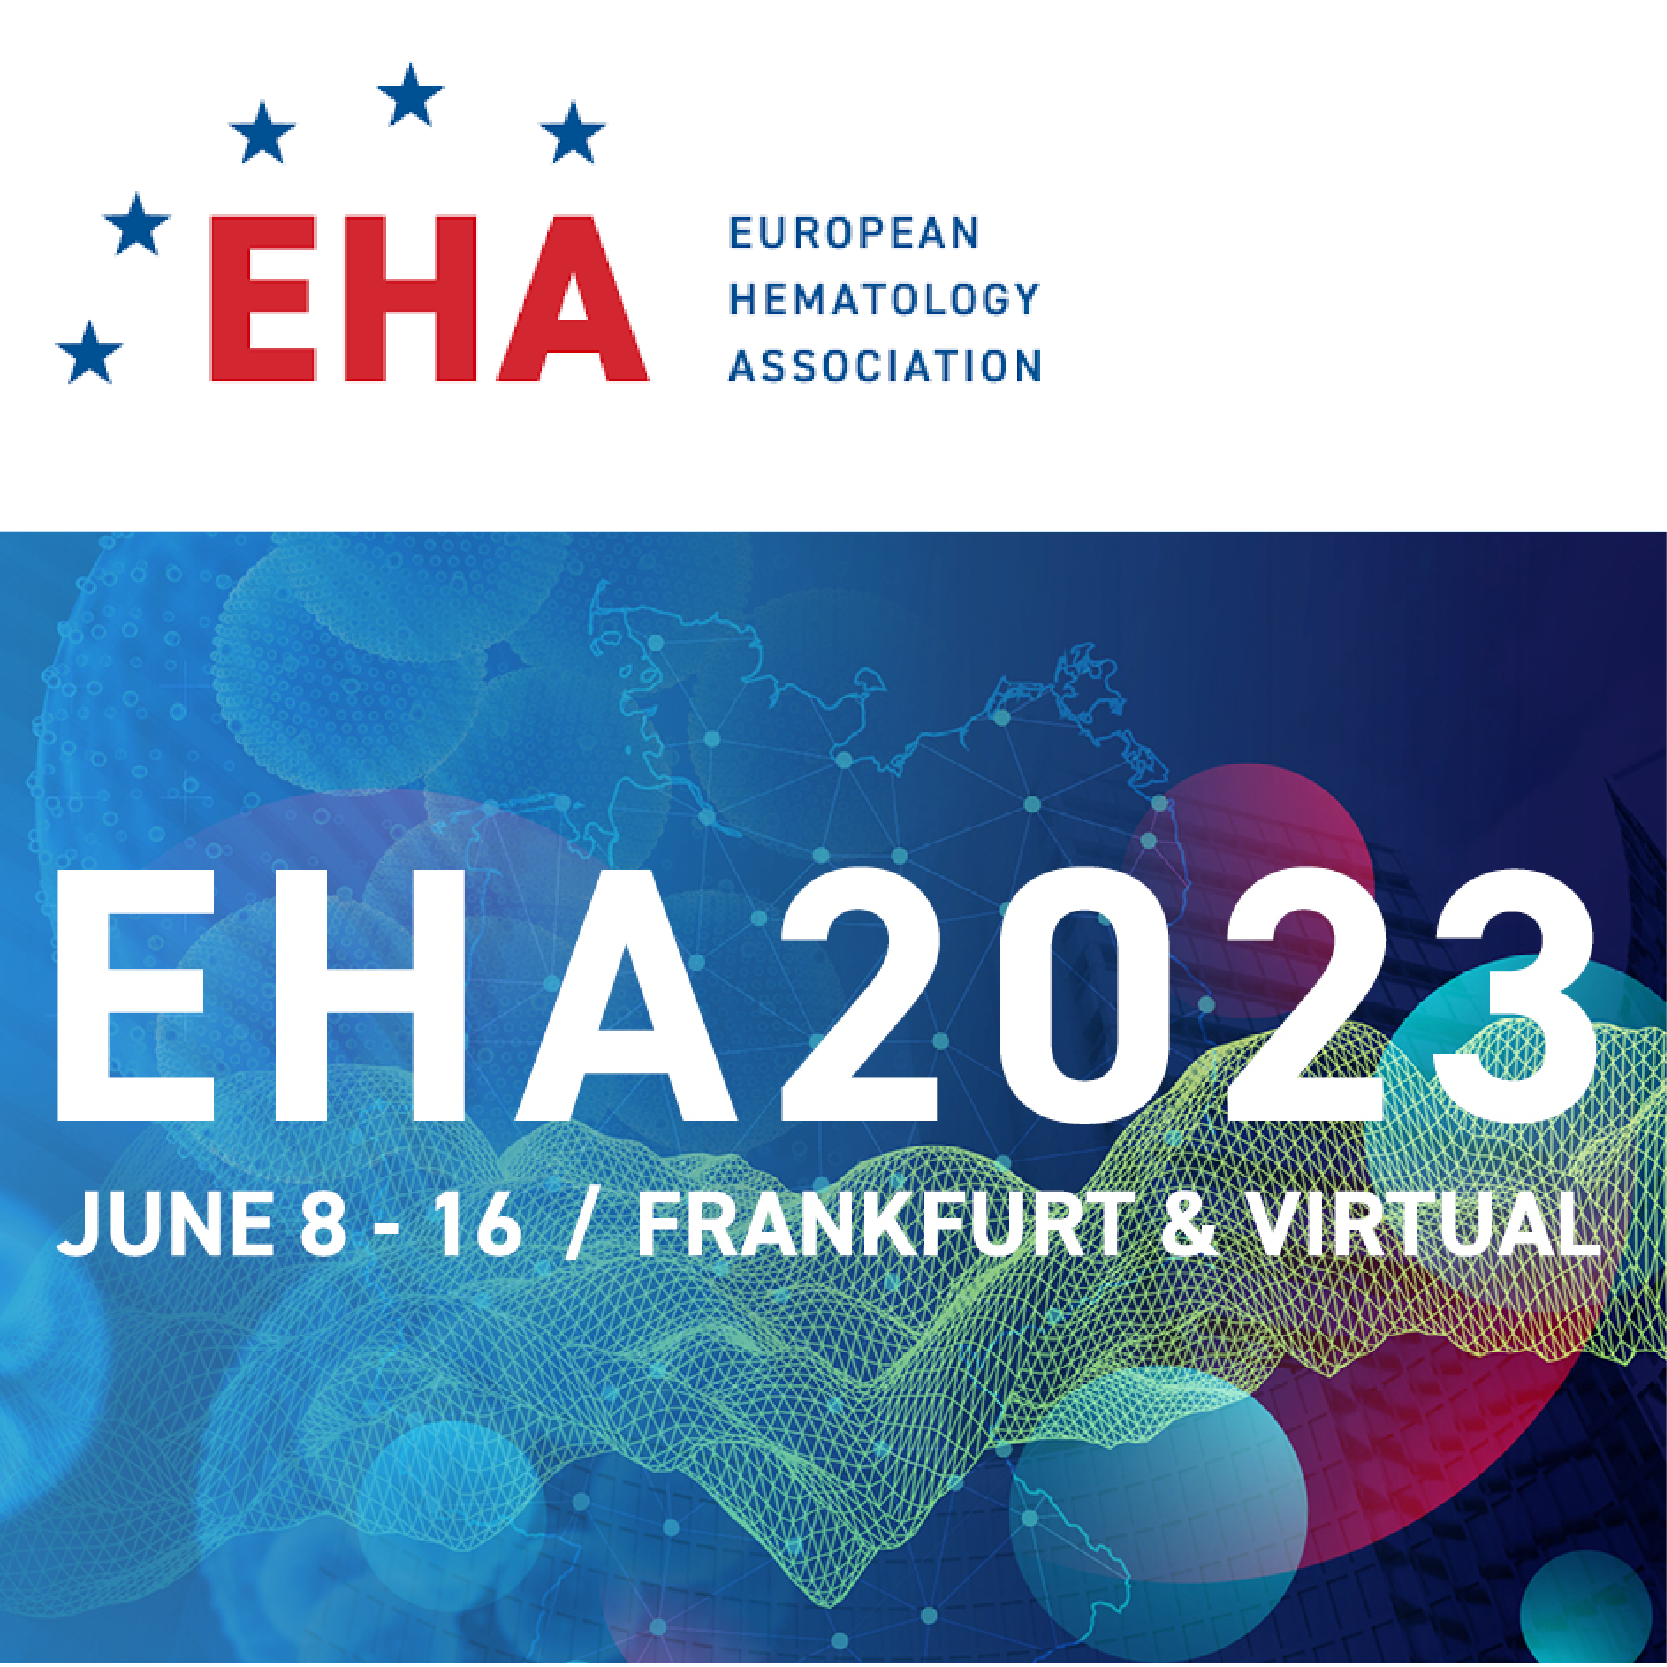 Medflixs The European Hematology Association EHA 2023